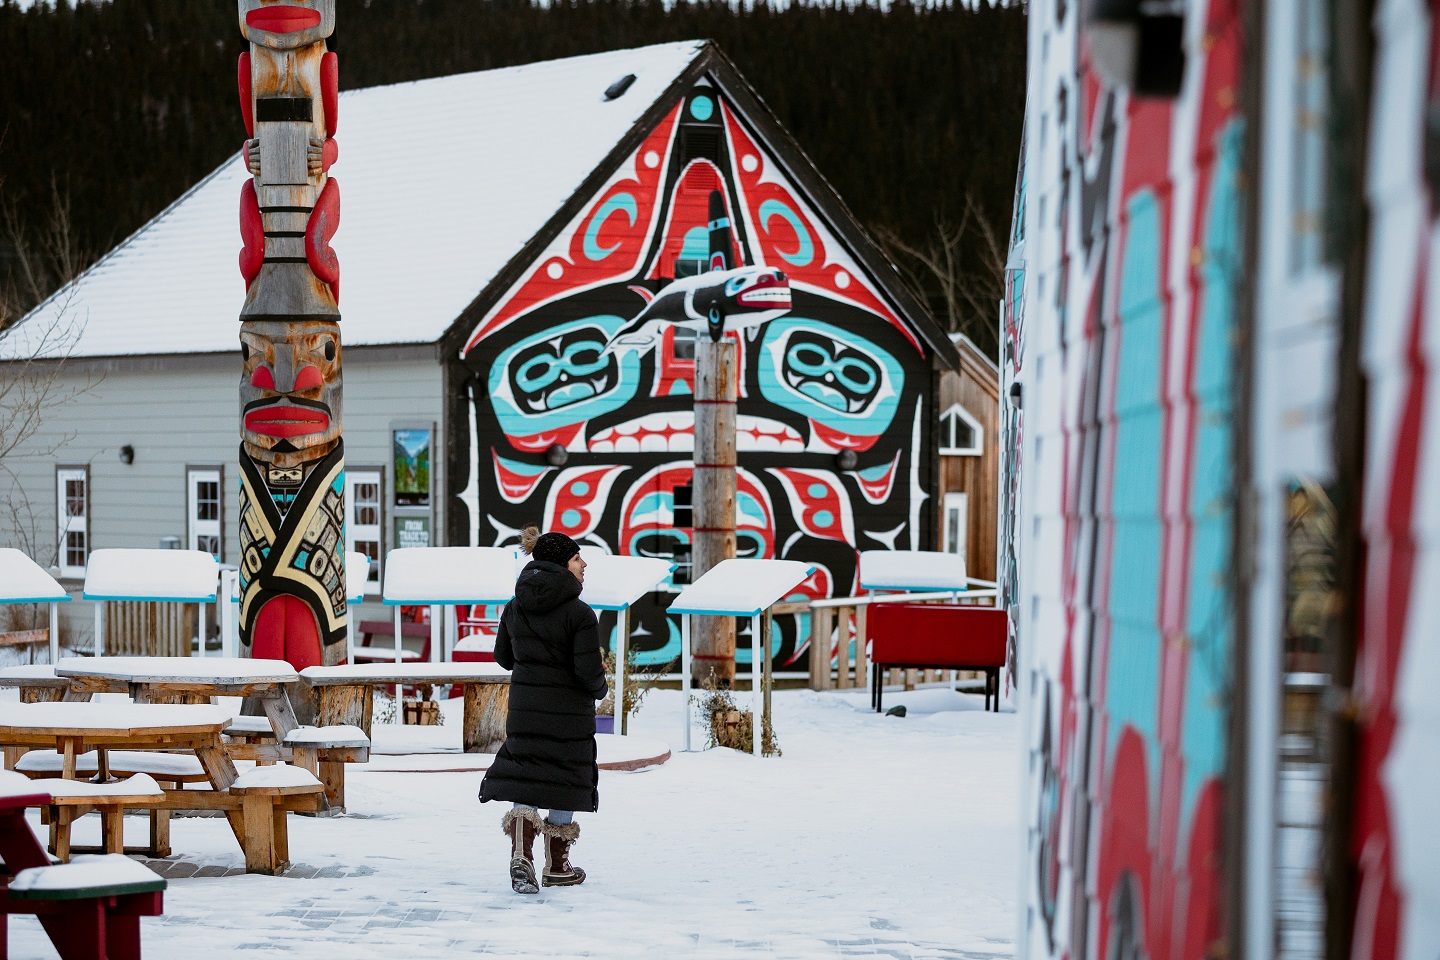 Une personne marche devant une murale et des œuvres autochtones dans un village enneigé.